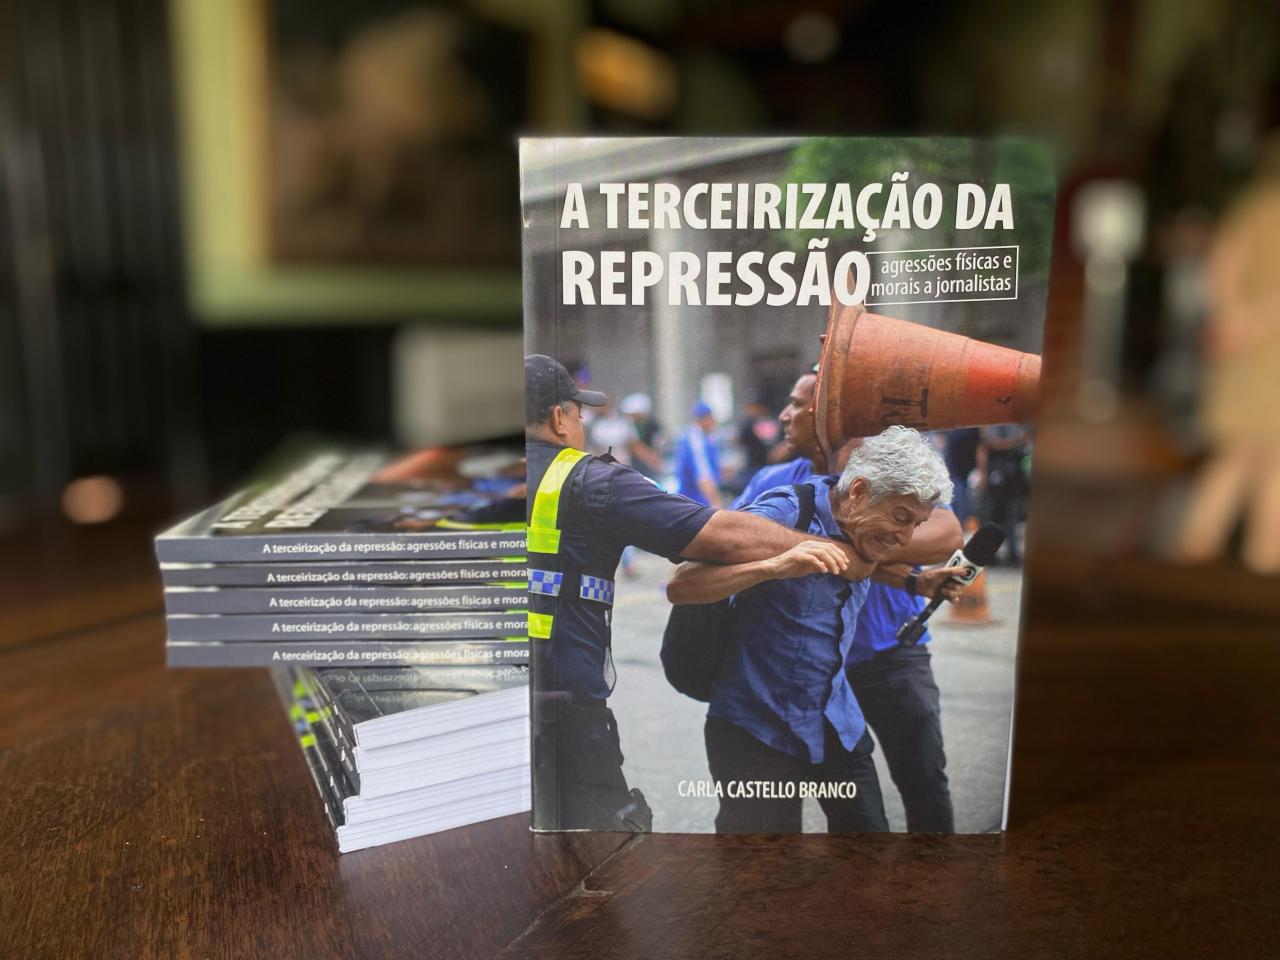 Jornalista Caco Barcellos é capa do livro “A Terceirização da Repressão: agressões físicas e morais a jornalistas”